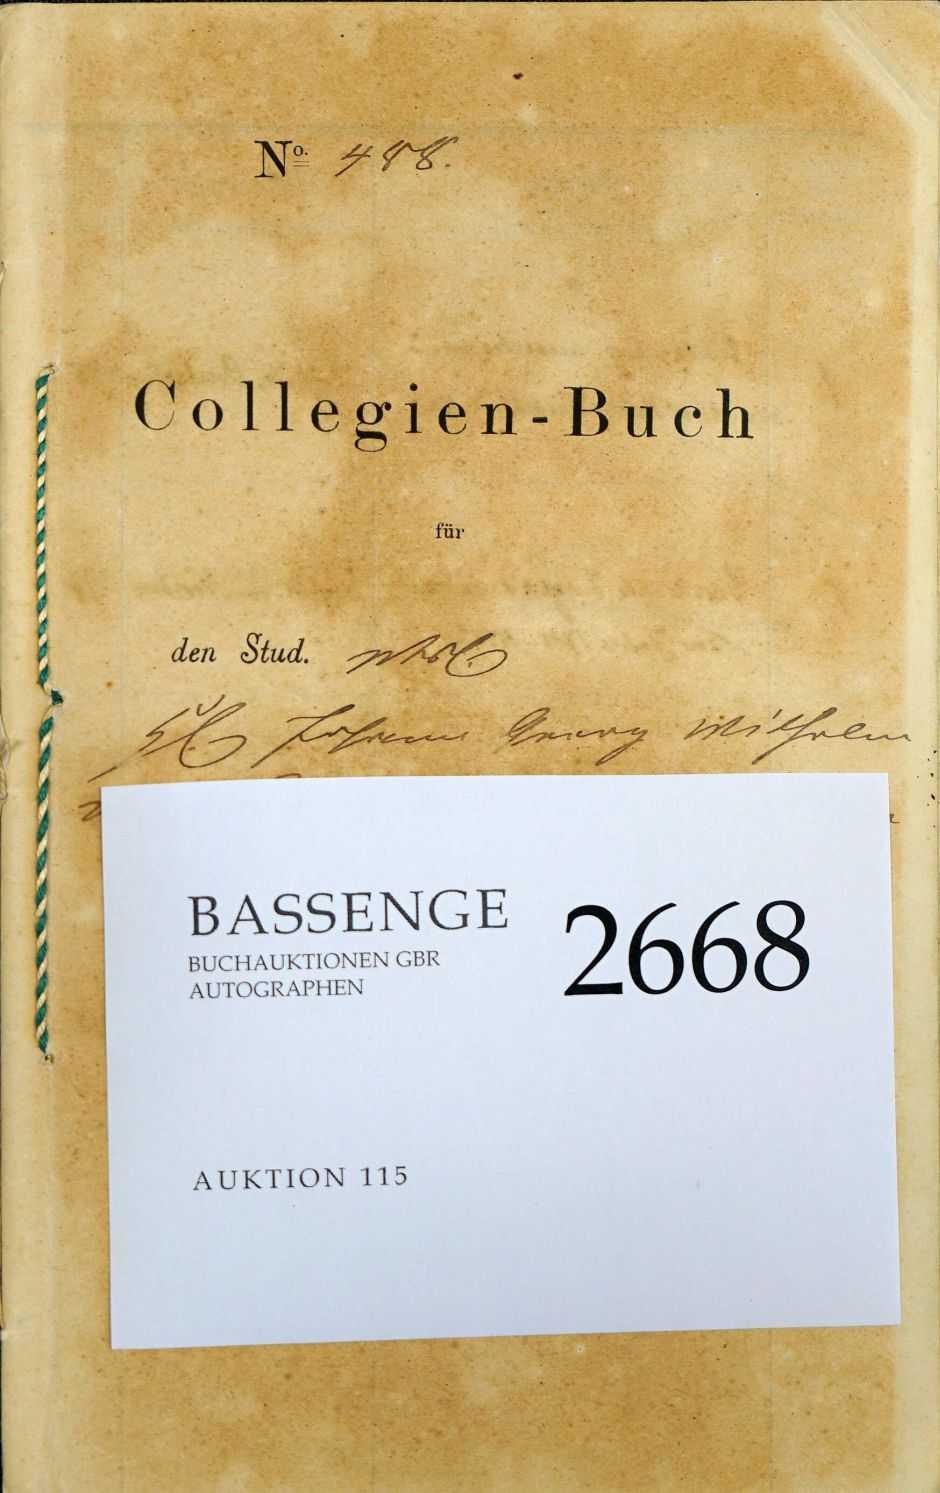 Lot 2668, Auction  115, Schubert, Hans Georg W. von, Kollegienbuch der Universität Leipzig